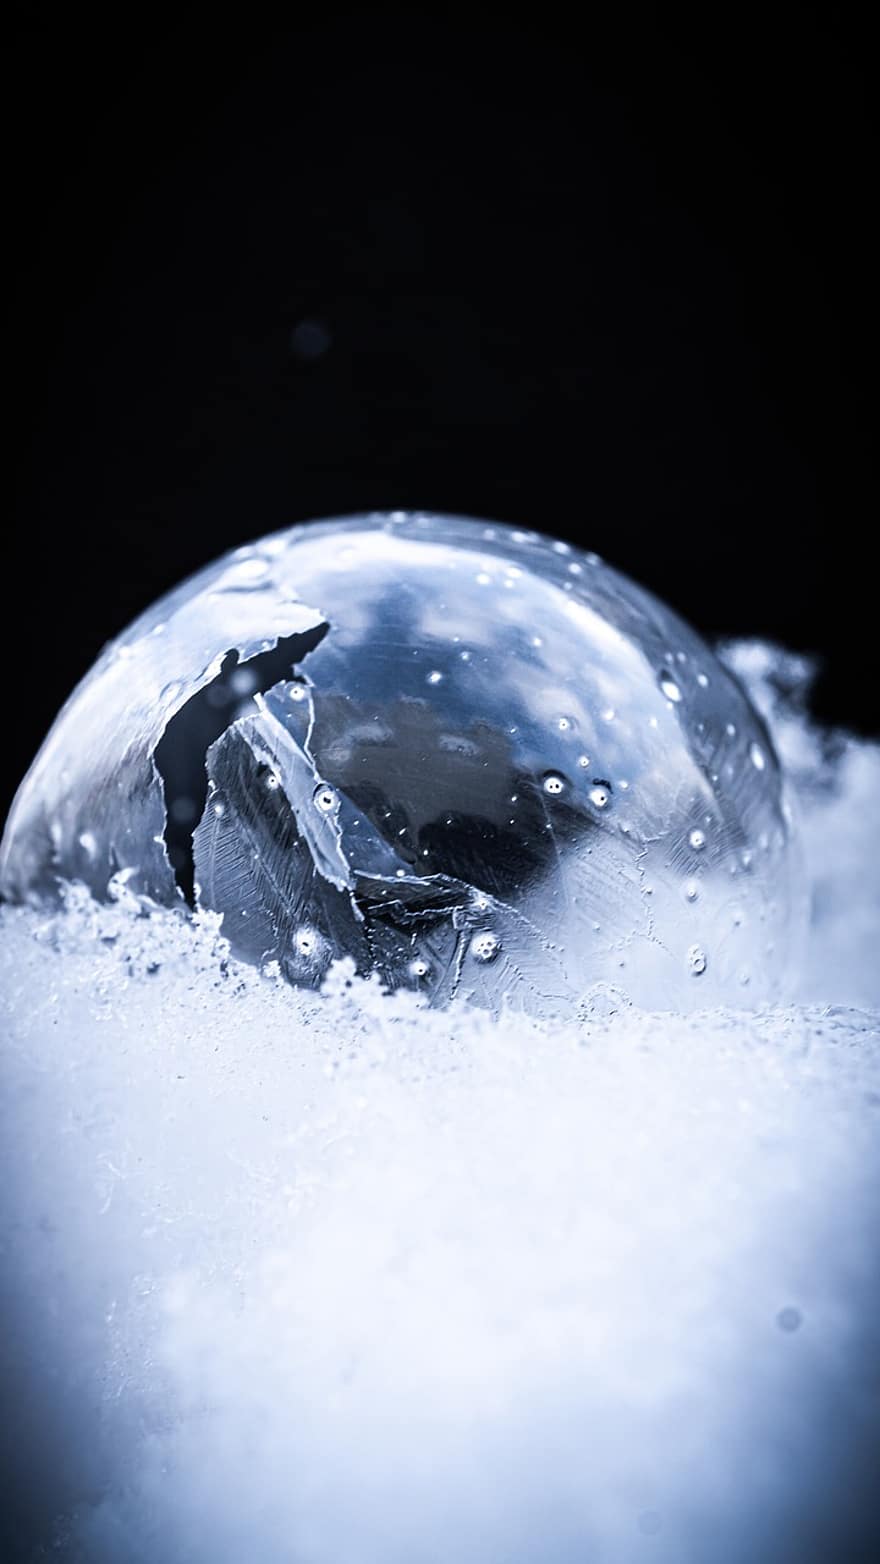 kabarcık, dondurulmuş, kar, buz, buz kristalleri, don, kış, sabun köpüğü, top, soğuk, kar yağışlı